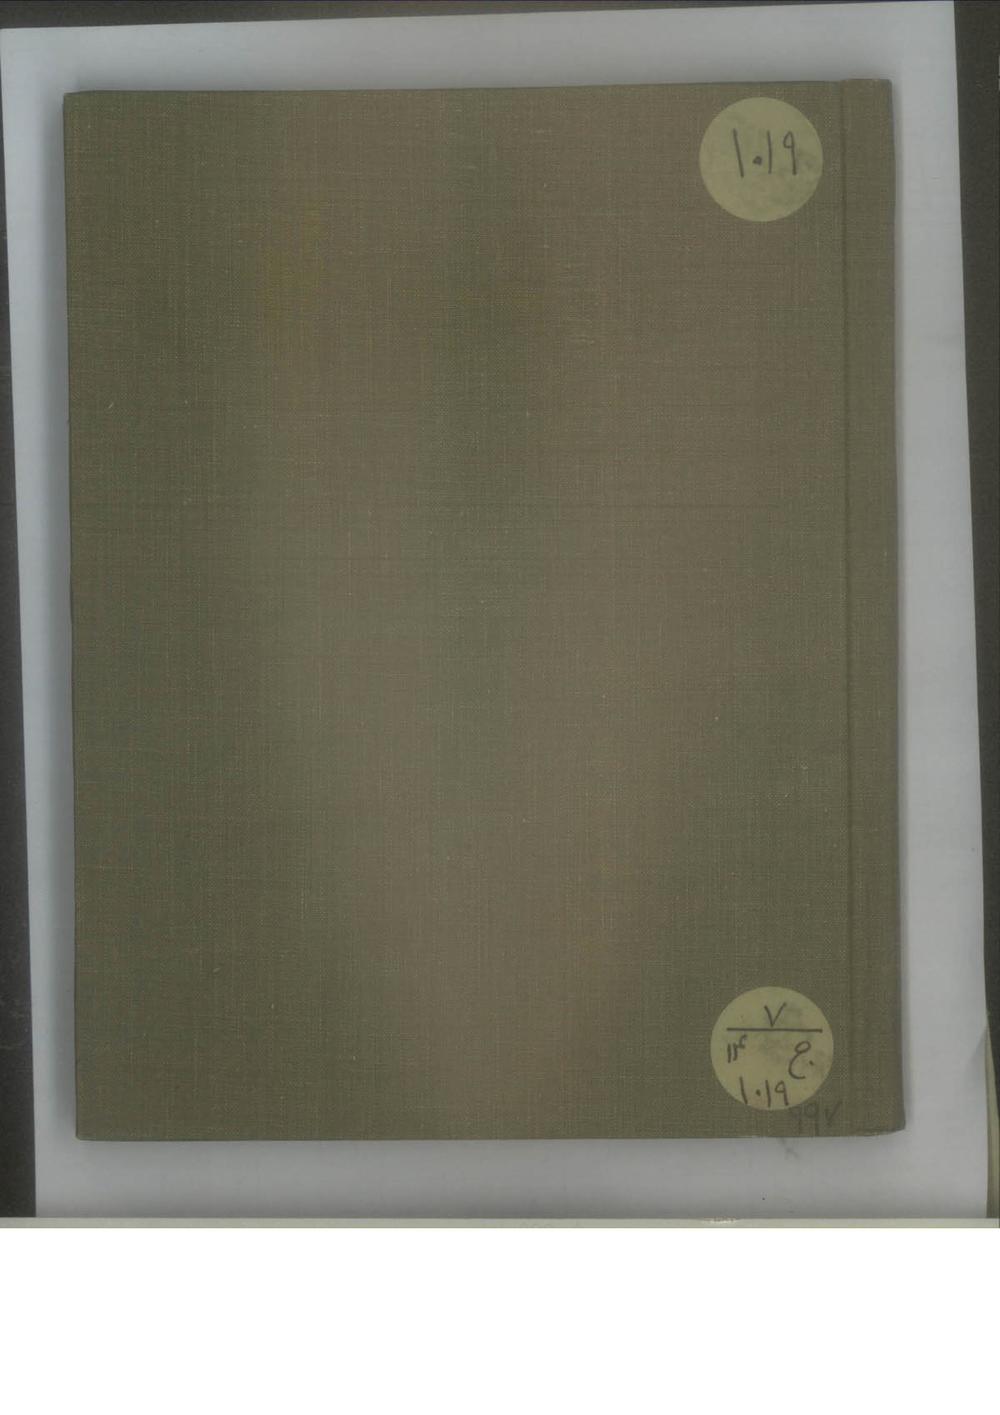 کتابچه اسامی صاحب منصبان و سربازان فوج مخصوص کزازی و سربندی با مواجب آنان در ماموریت سرحد مریوان برای منع عشایر جاف